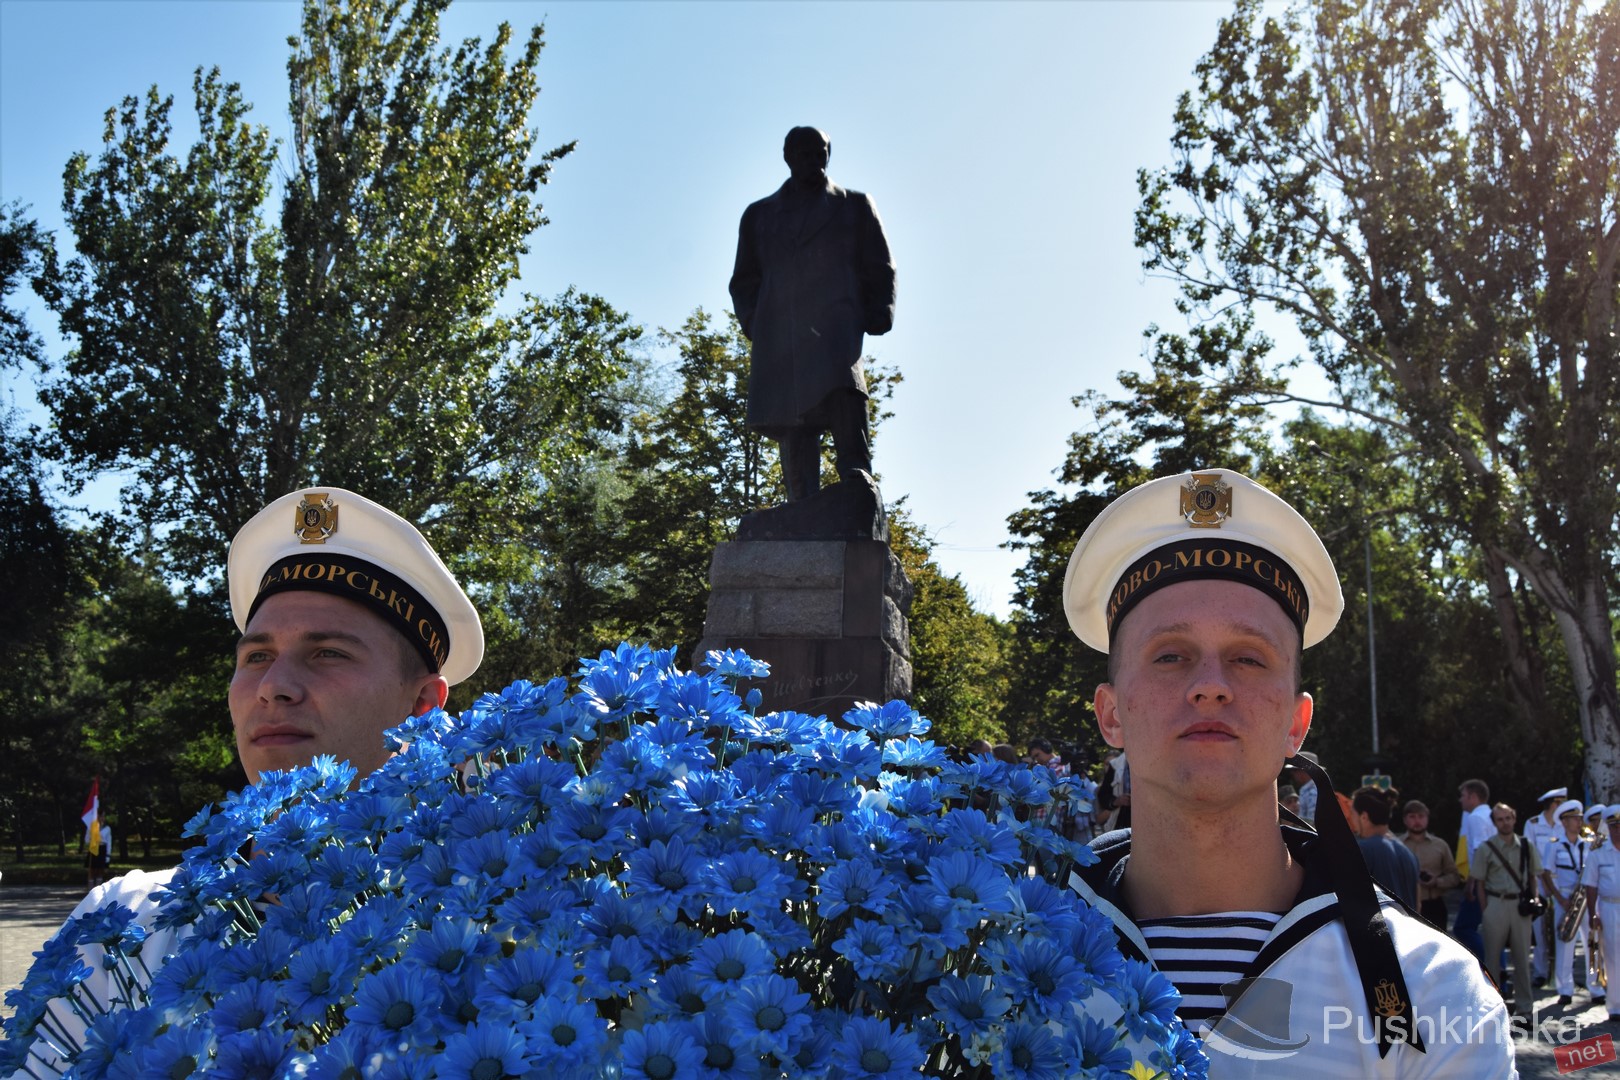  День независимости Украины в Одессе. Фото:pushkinska.net